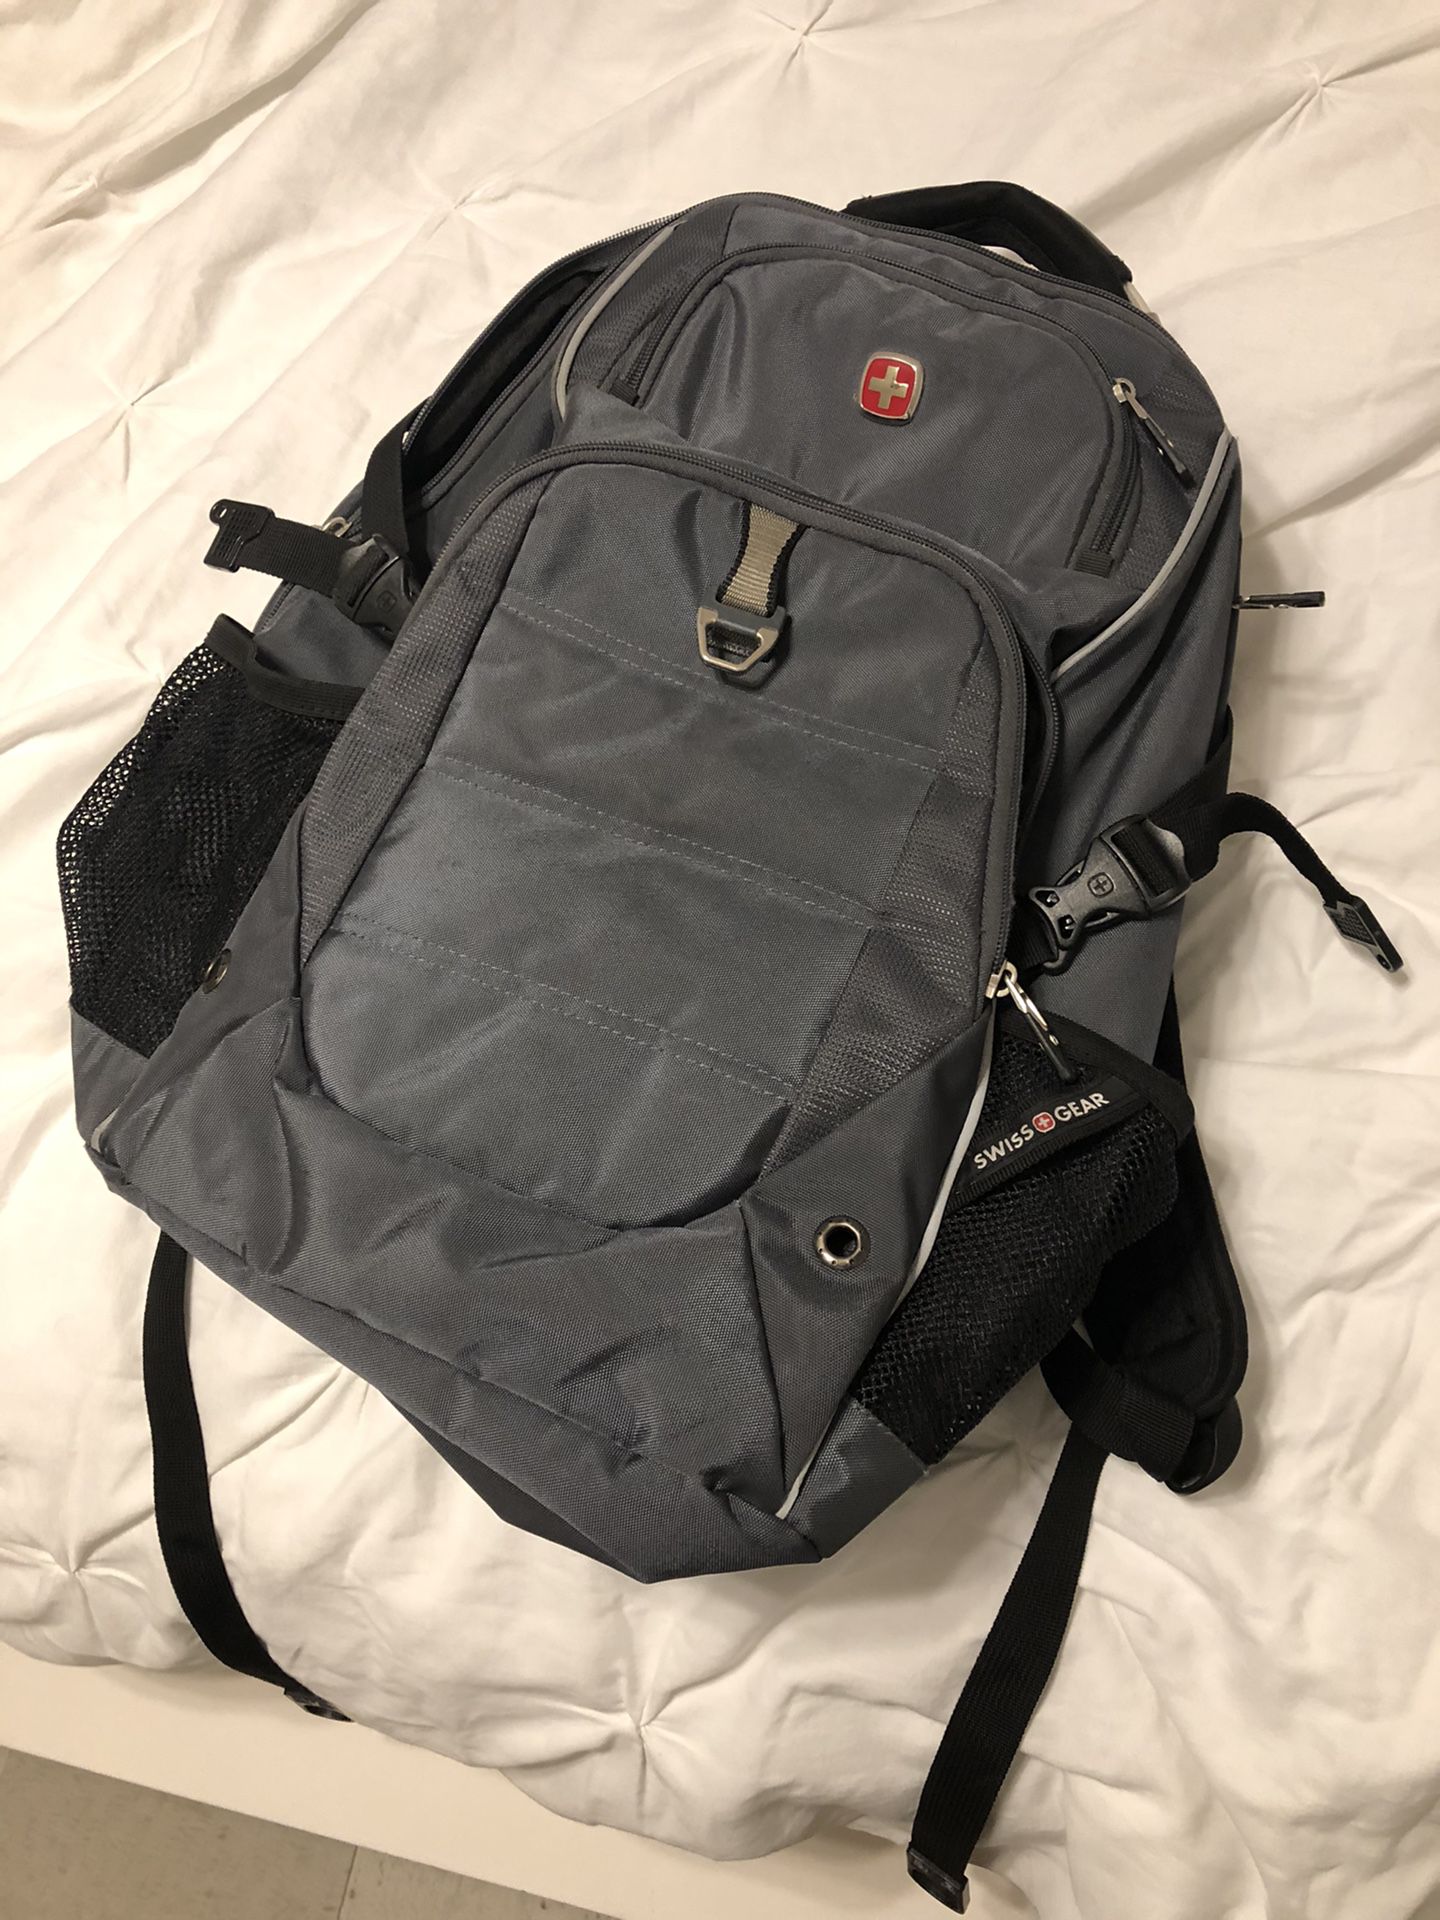 Swiss Gear TSA Compliant Backpack